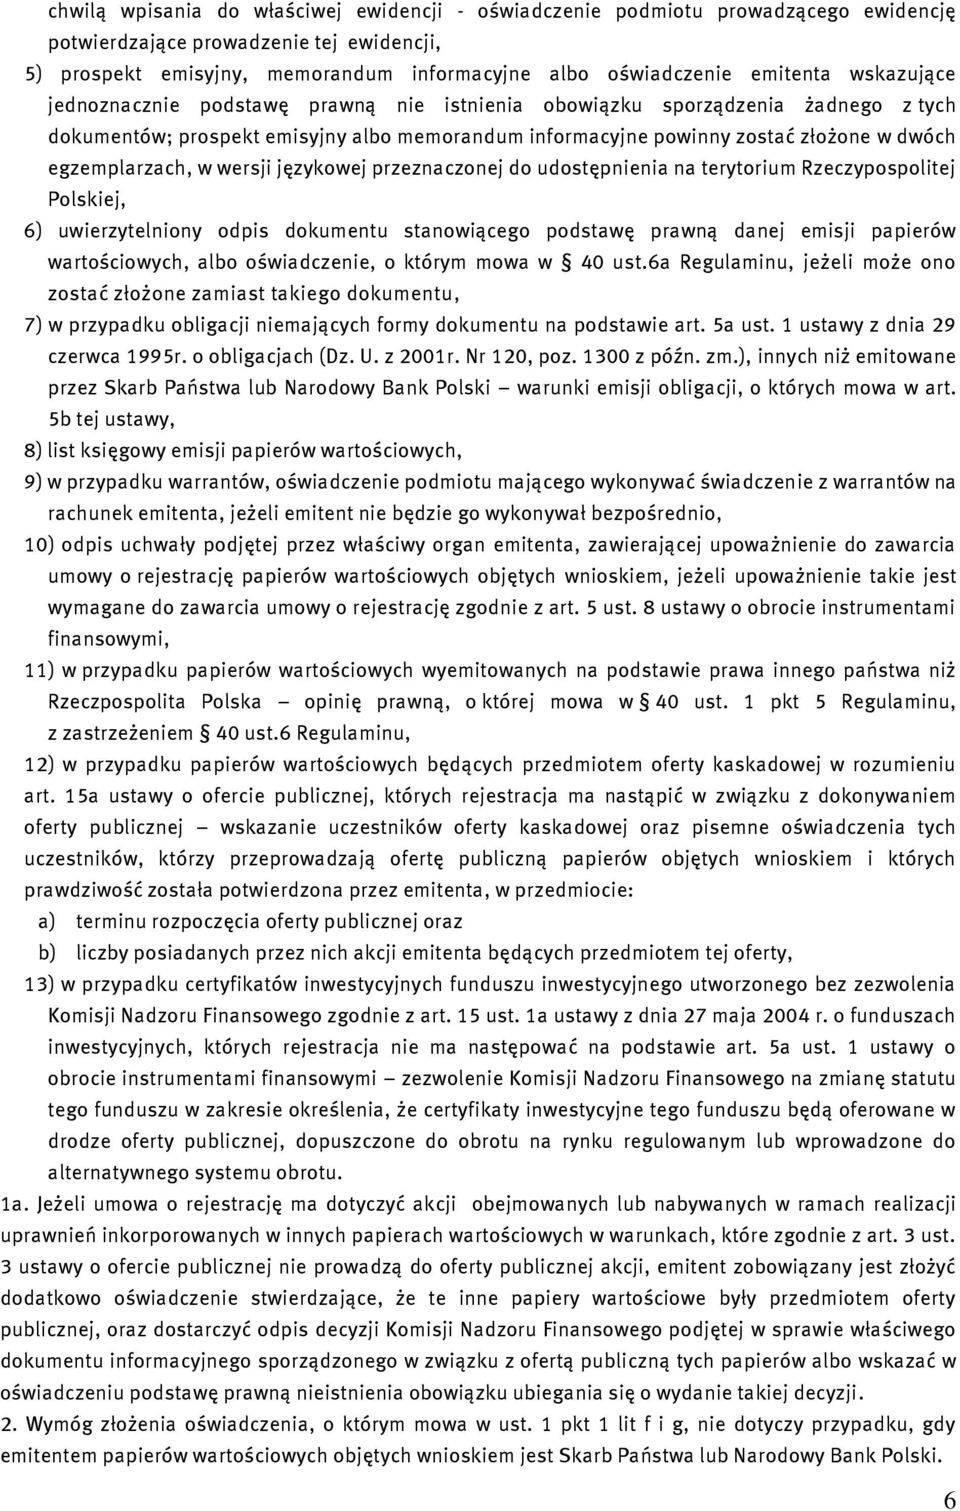 egzemplarzach, w wersji językowej przeznaczonej do udostępnienia na terytorium Rzeczypospolitej Polskiej, 6) uwierzytelniony odpis dokumentu stanowiącego podstawę prawną danej emisji papierów